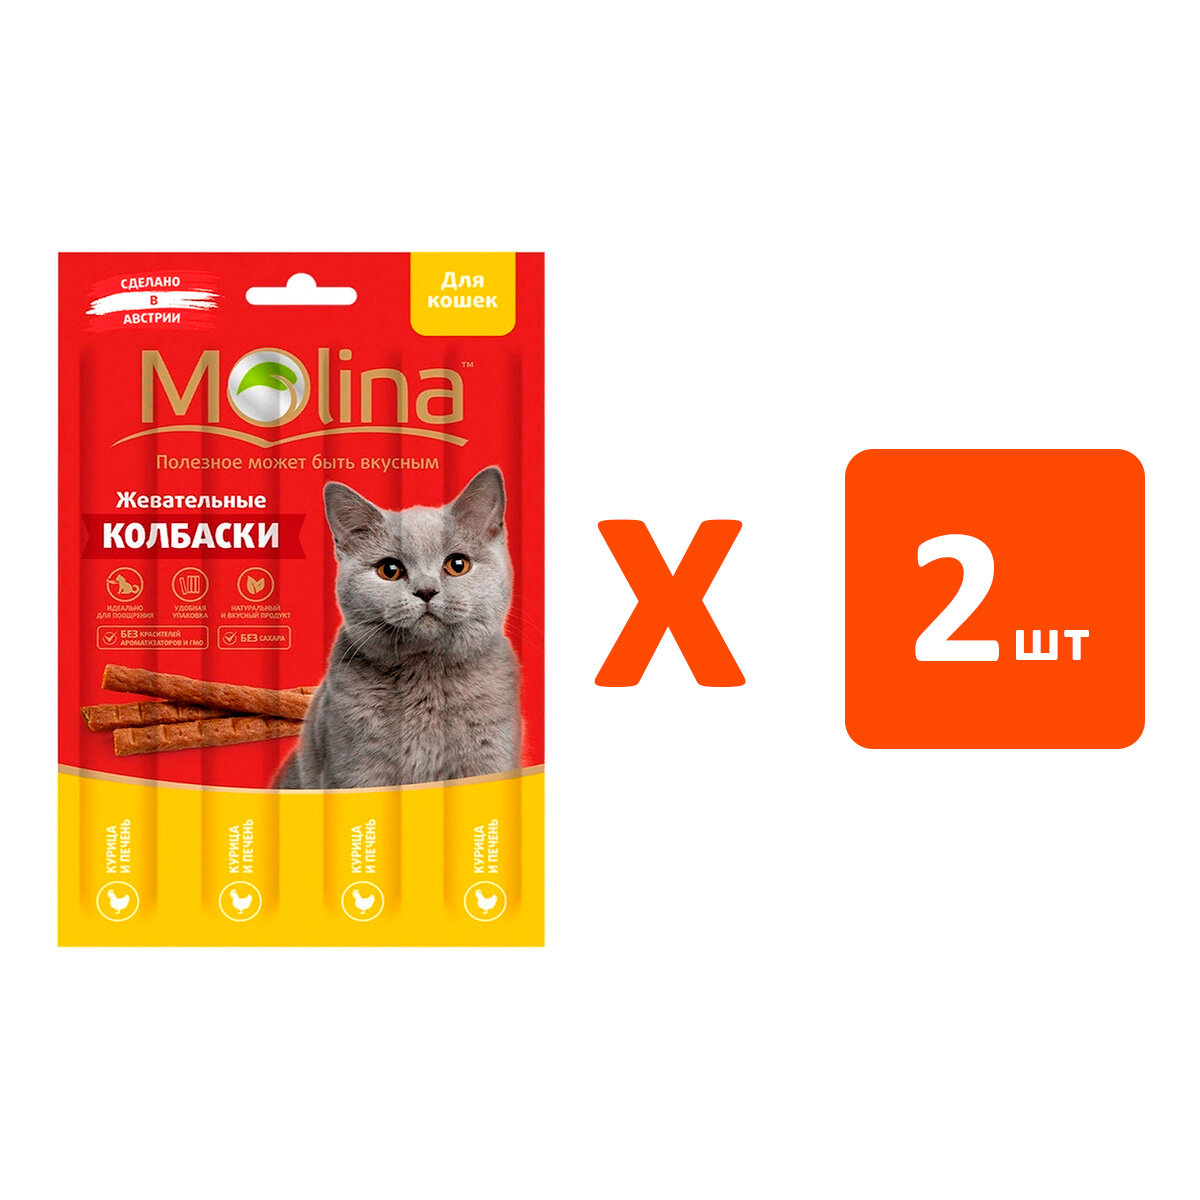 Лакомство MOLINA для кошек колбаски с курицей и печенью (20 гр х 2 шт)